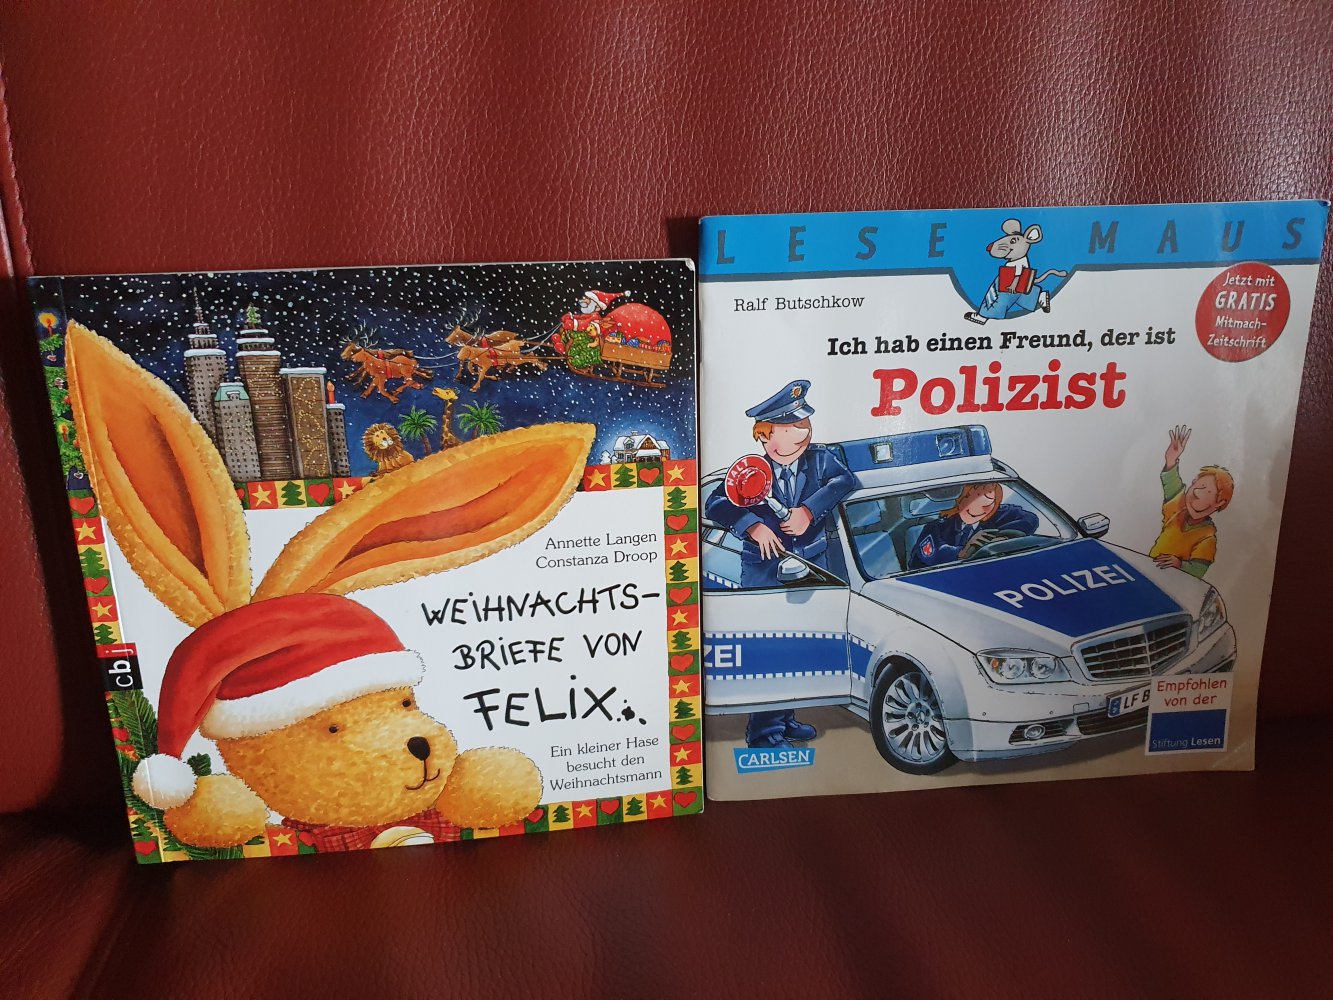 2 Hefte cbj Weihnachtsbriefe von Felix & Lesemaus I h habe einen Freund, der ist Polizist